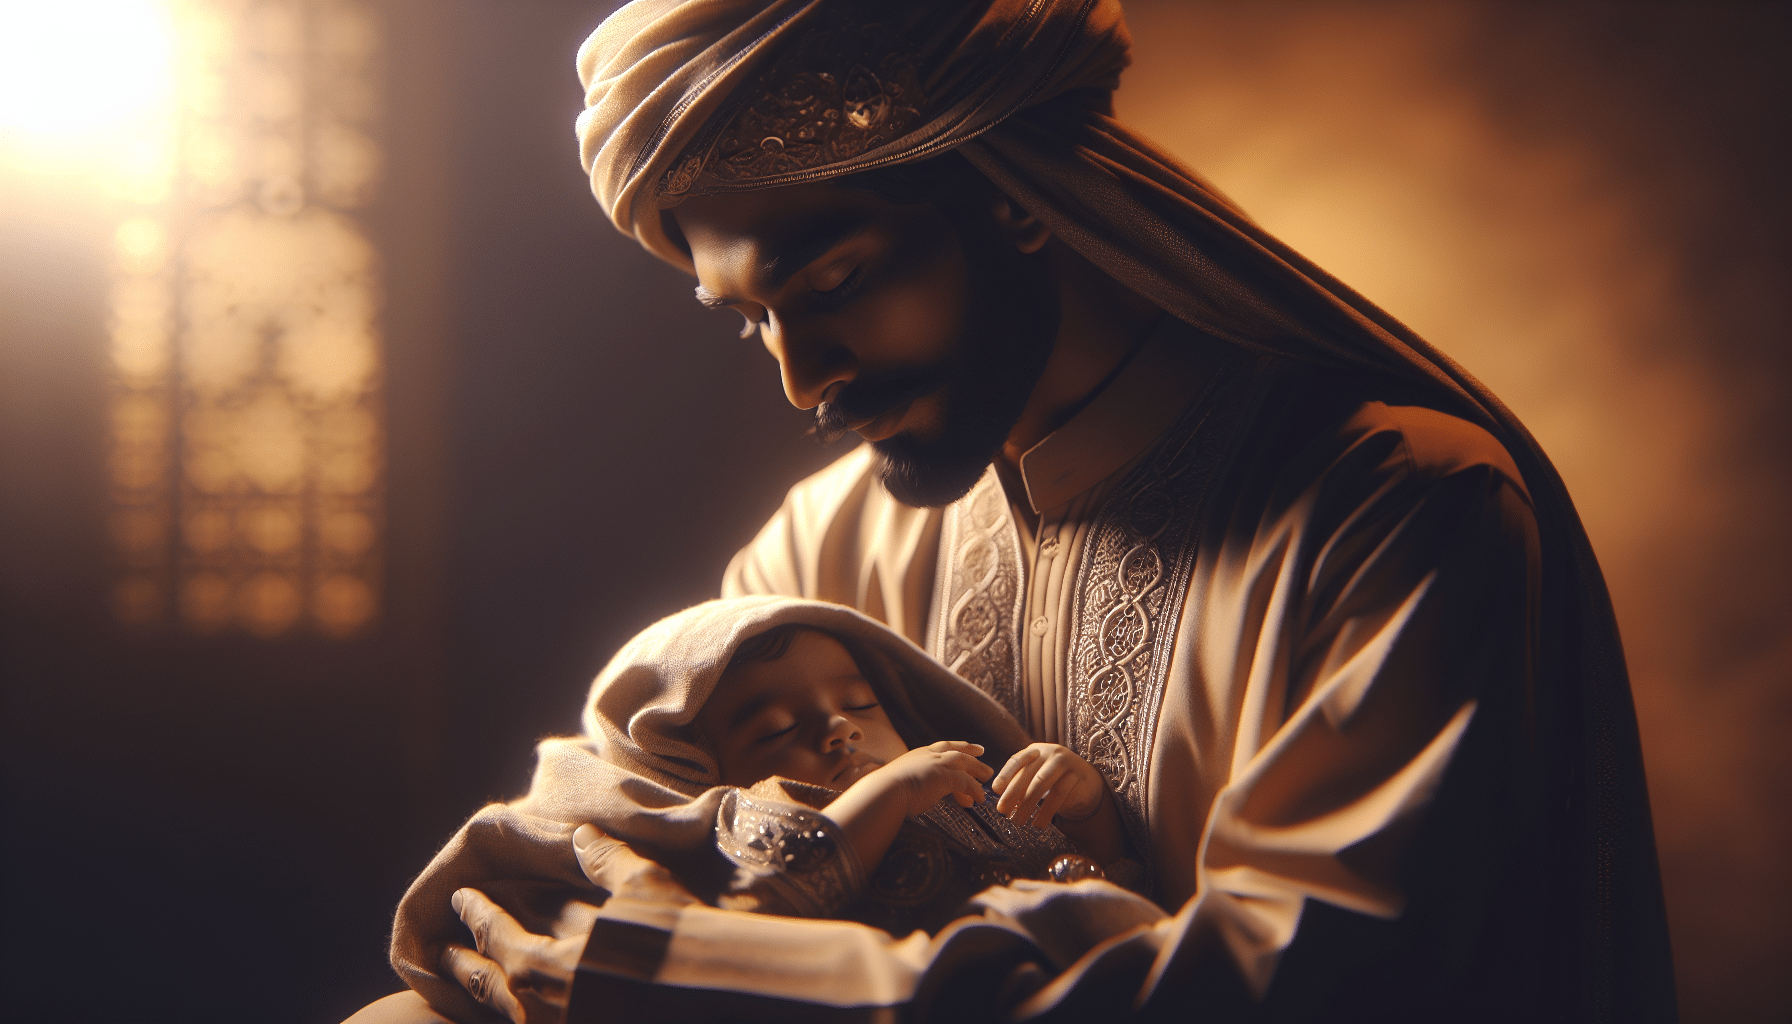 découvrez la signification de rêver de porter un bébé dans ses bras en islam et interprétez vos rêves avec précision.